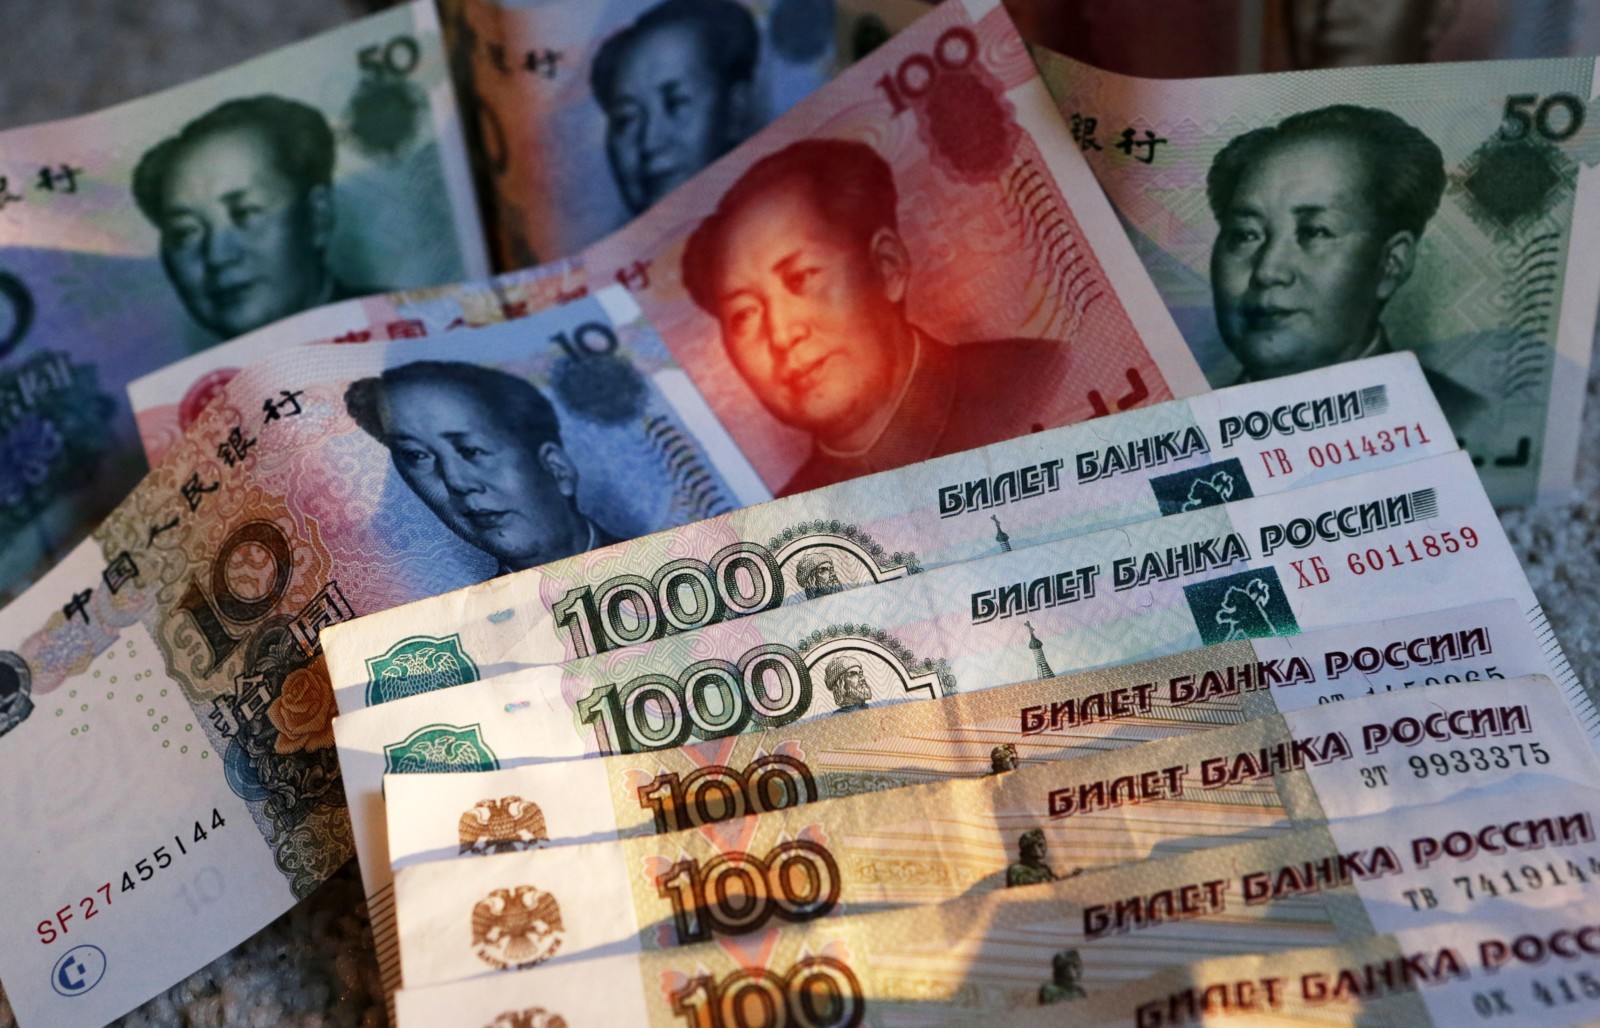 Санкции против Мосбиржи вынудят РФ ориентироваться на юань, что окончательно сделает ее придатком китайской экономики — финансовый аналитик